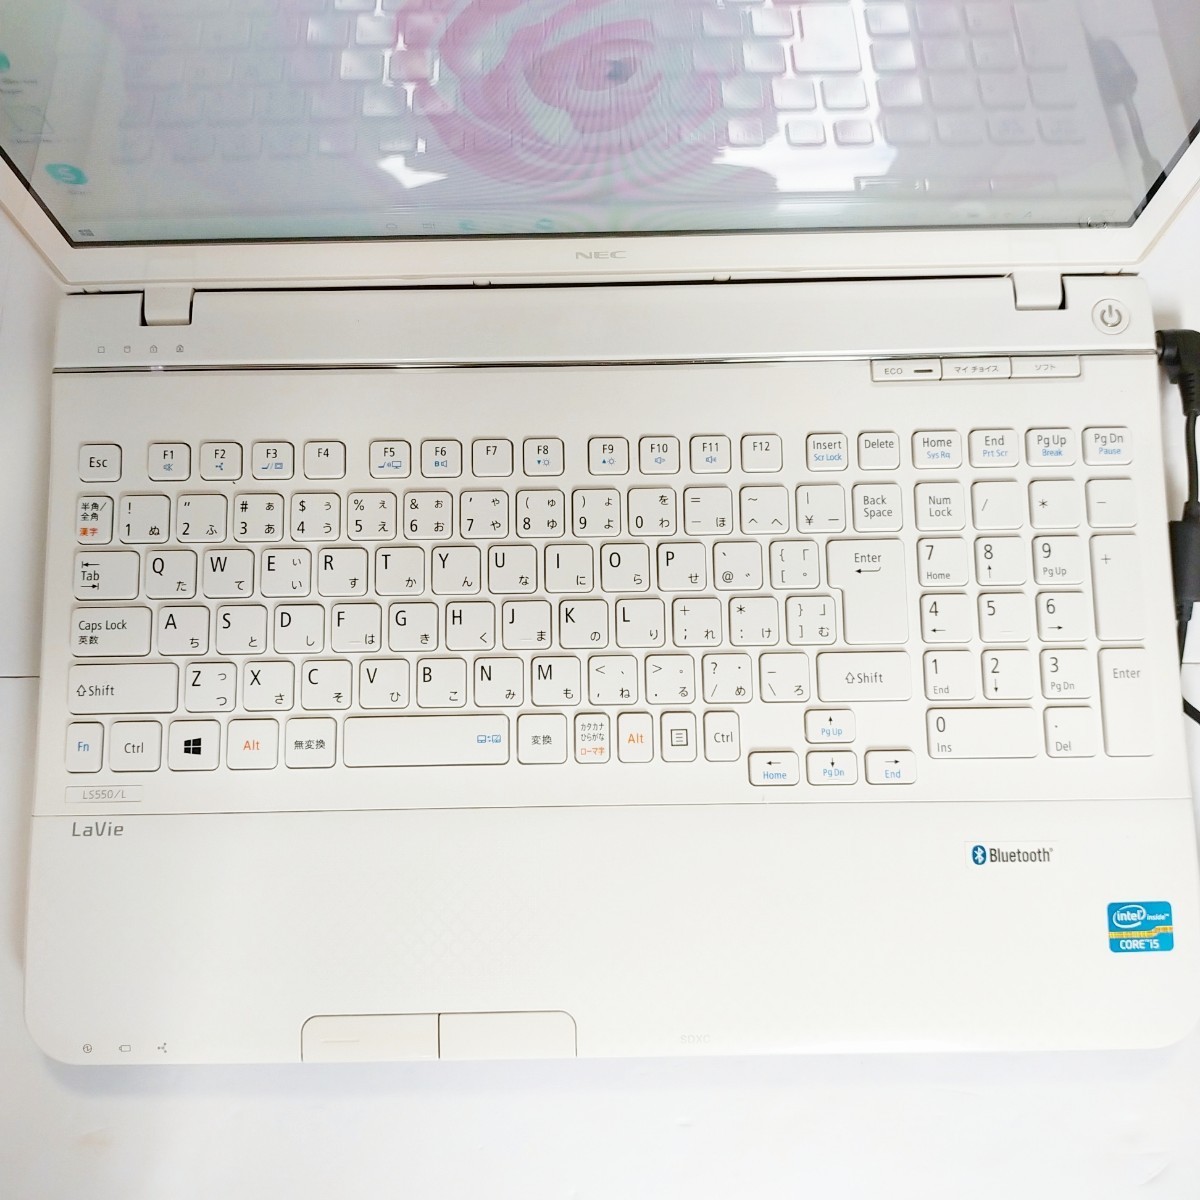 12695円 登場大人気アイテム 人気機種 NEC LaVie ノートパソコン PC カメラ☆ホワイト